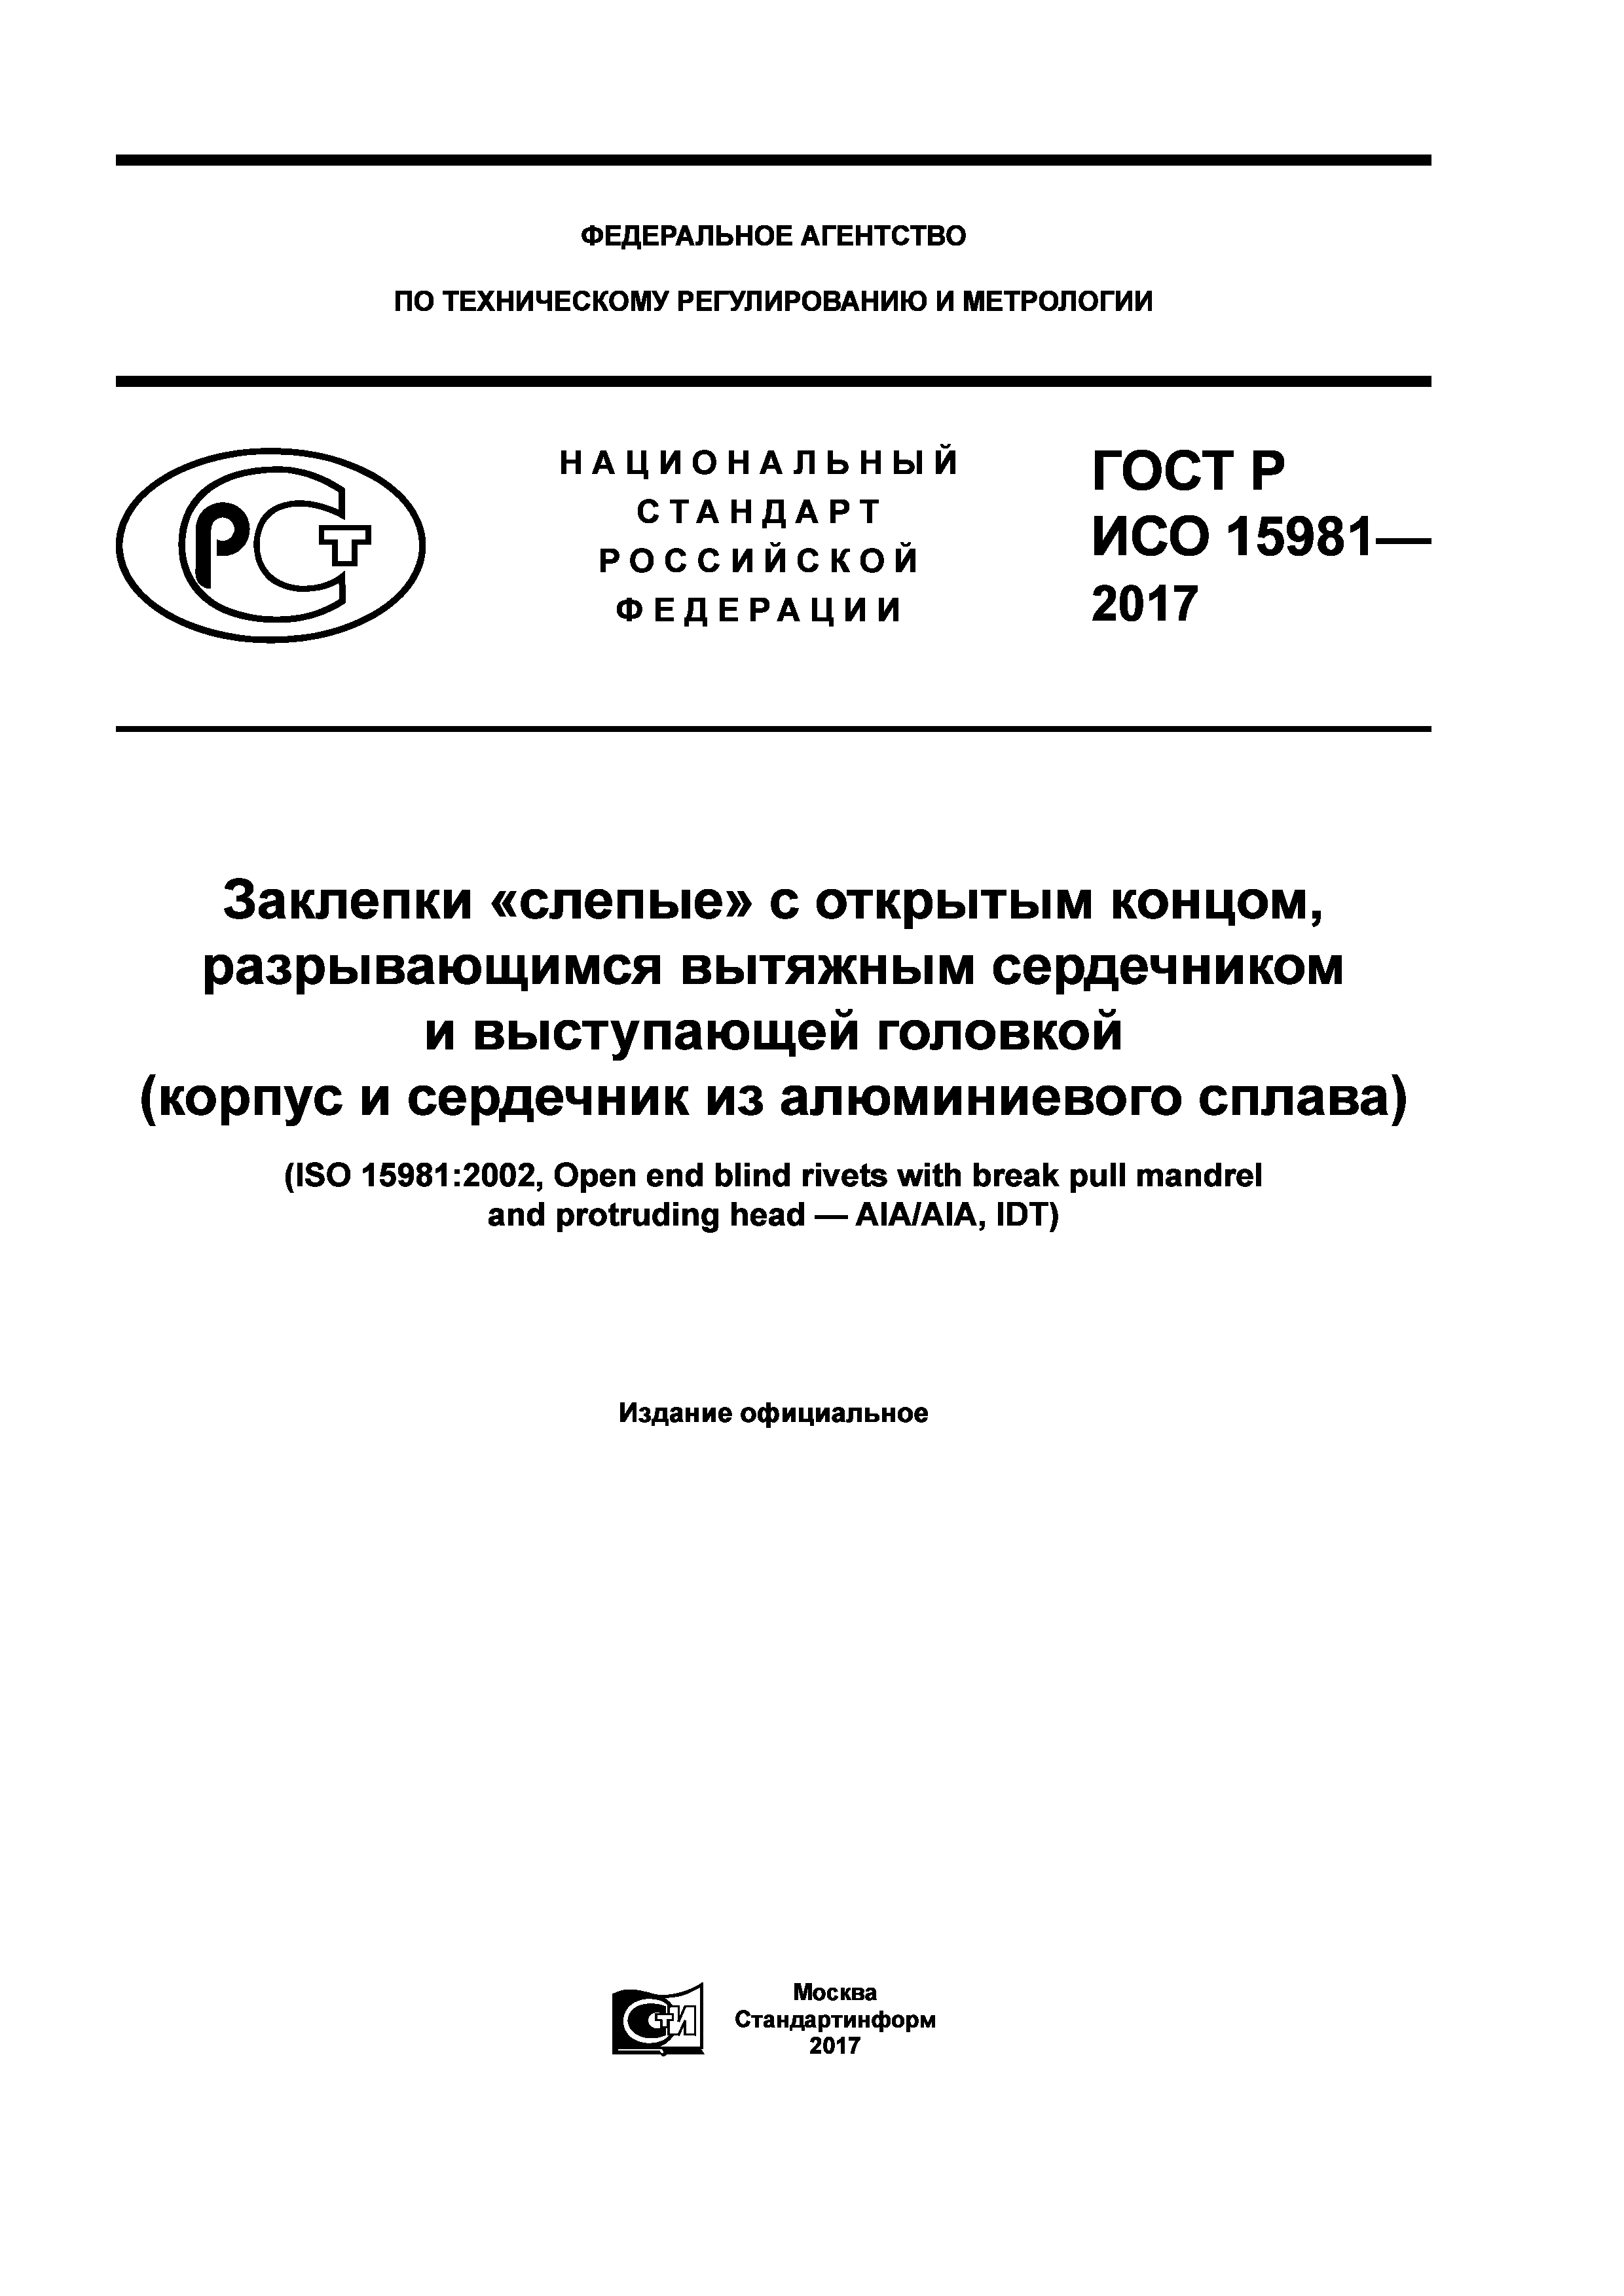 ГОСТ Р ИСО 15981-2017